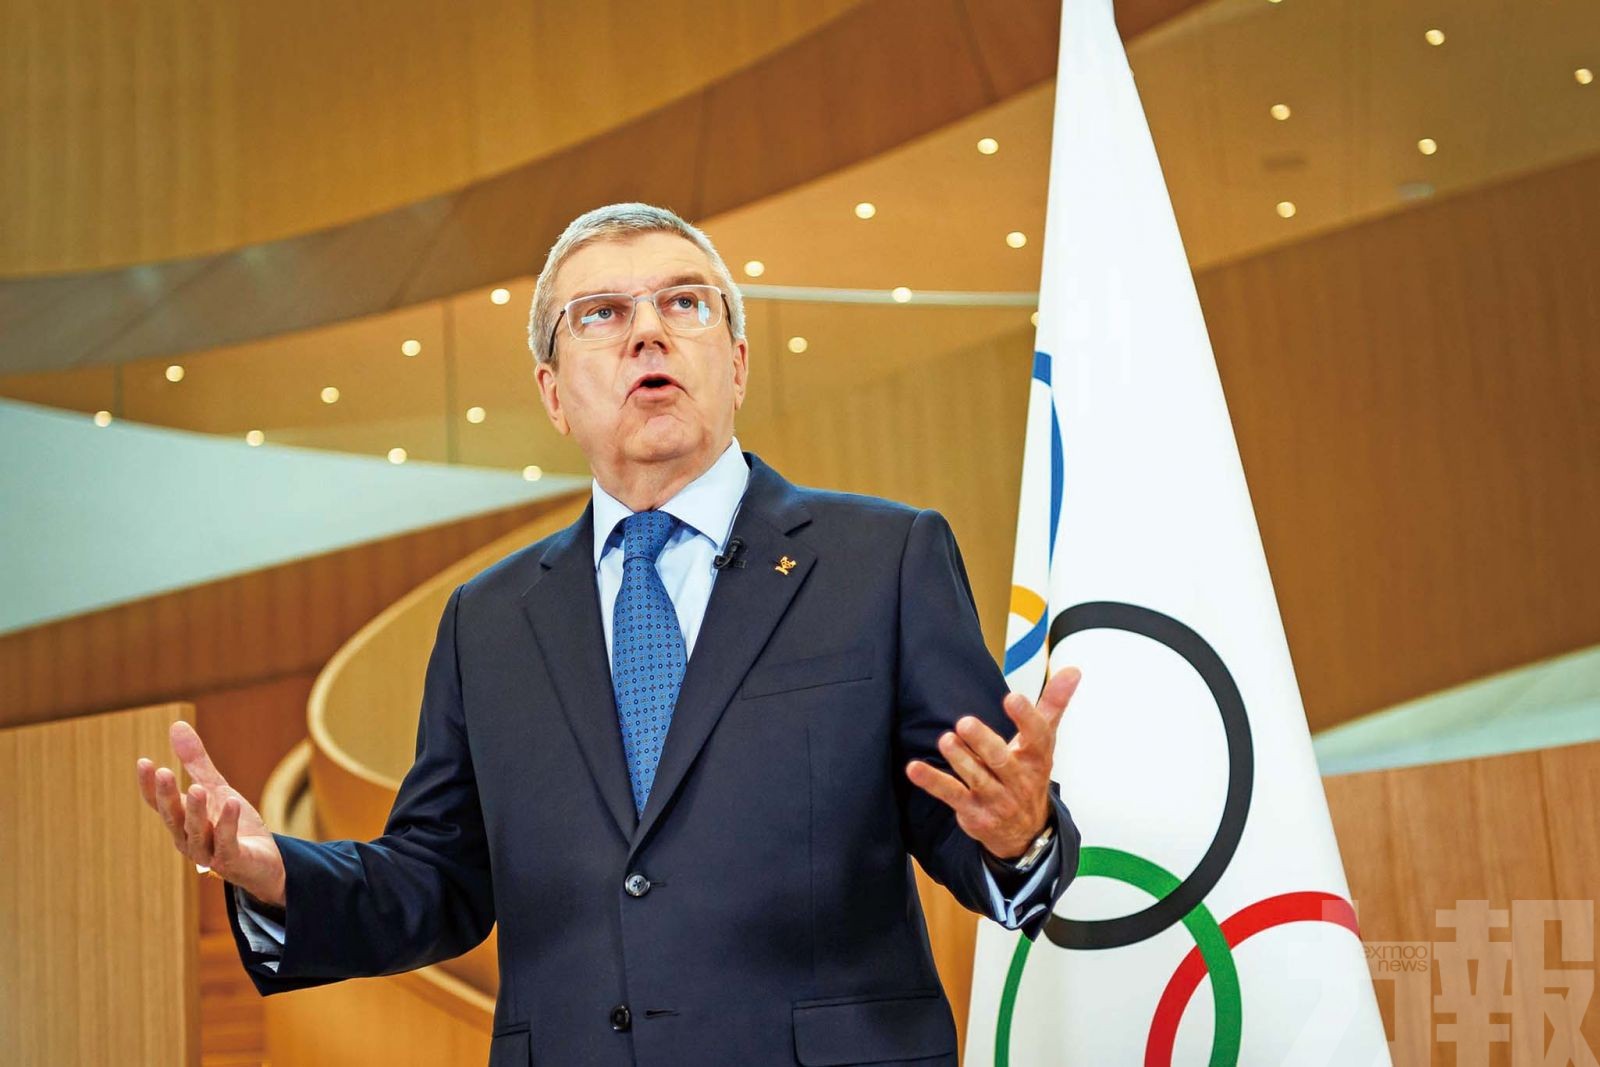 國際奧委會為奧運考慮不同方案